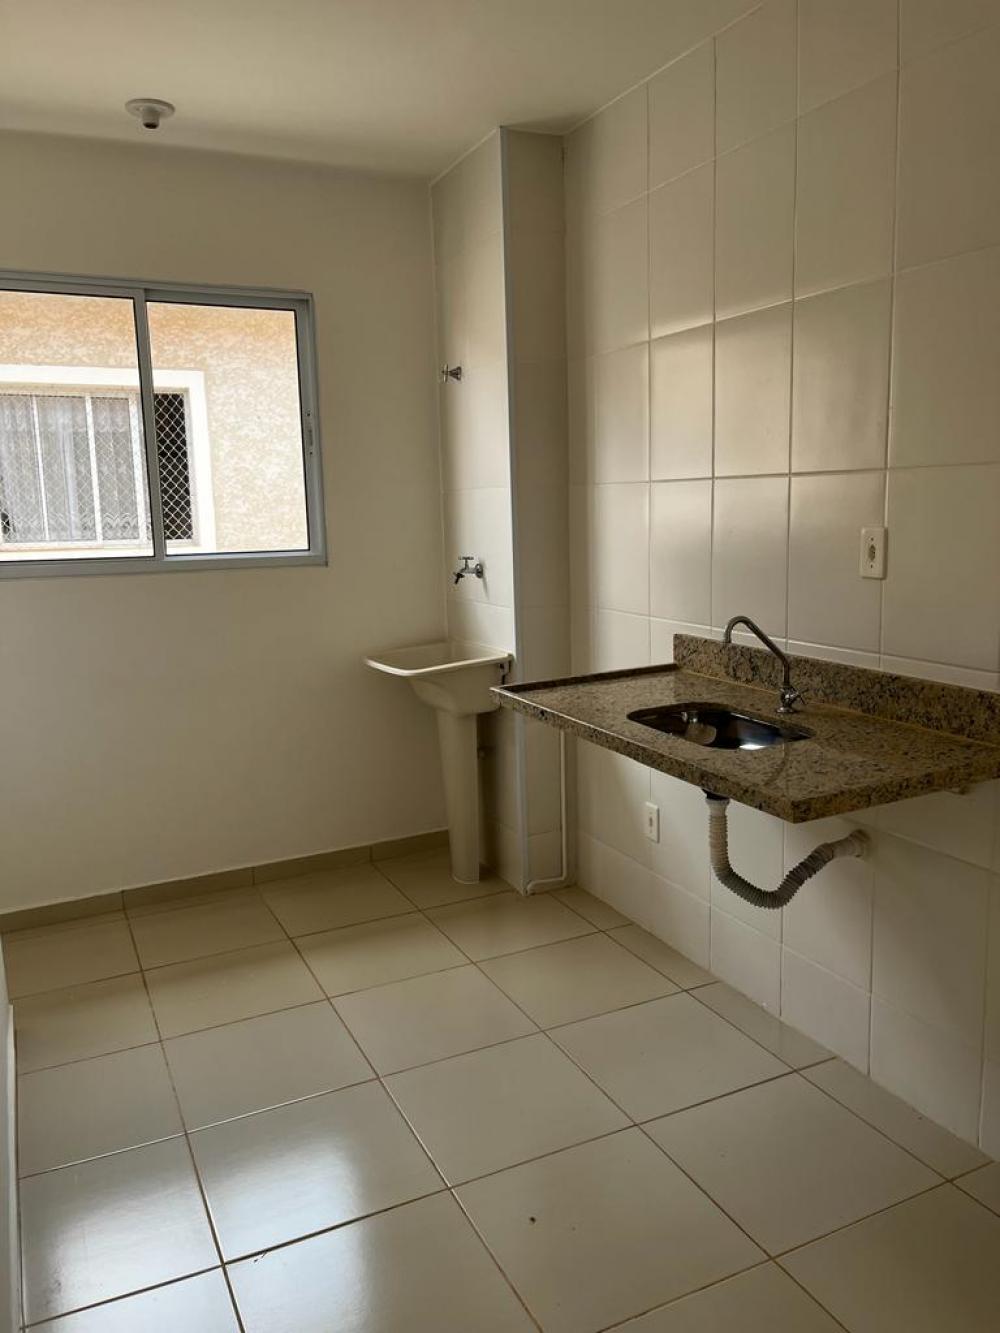 Apartamento com 51 m², 1 vaga de garagem, 2 dormitórios, 1 banheiros social, cozinha e área de serviço anexa (vai ser entregue com o piso)